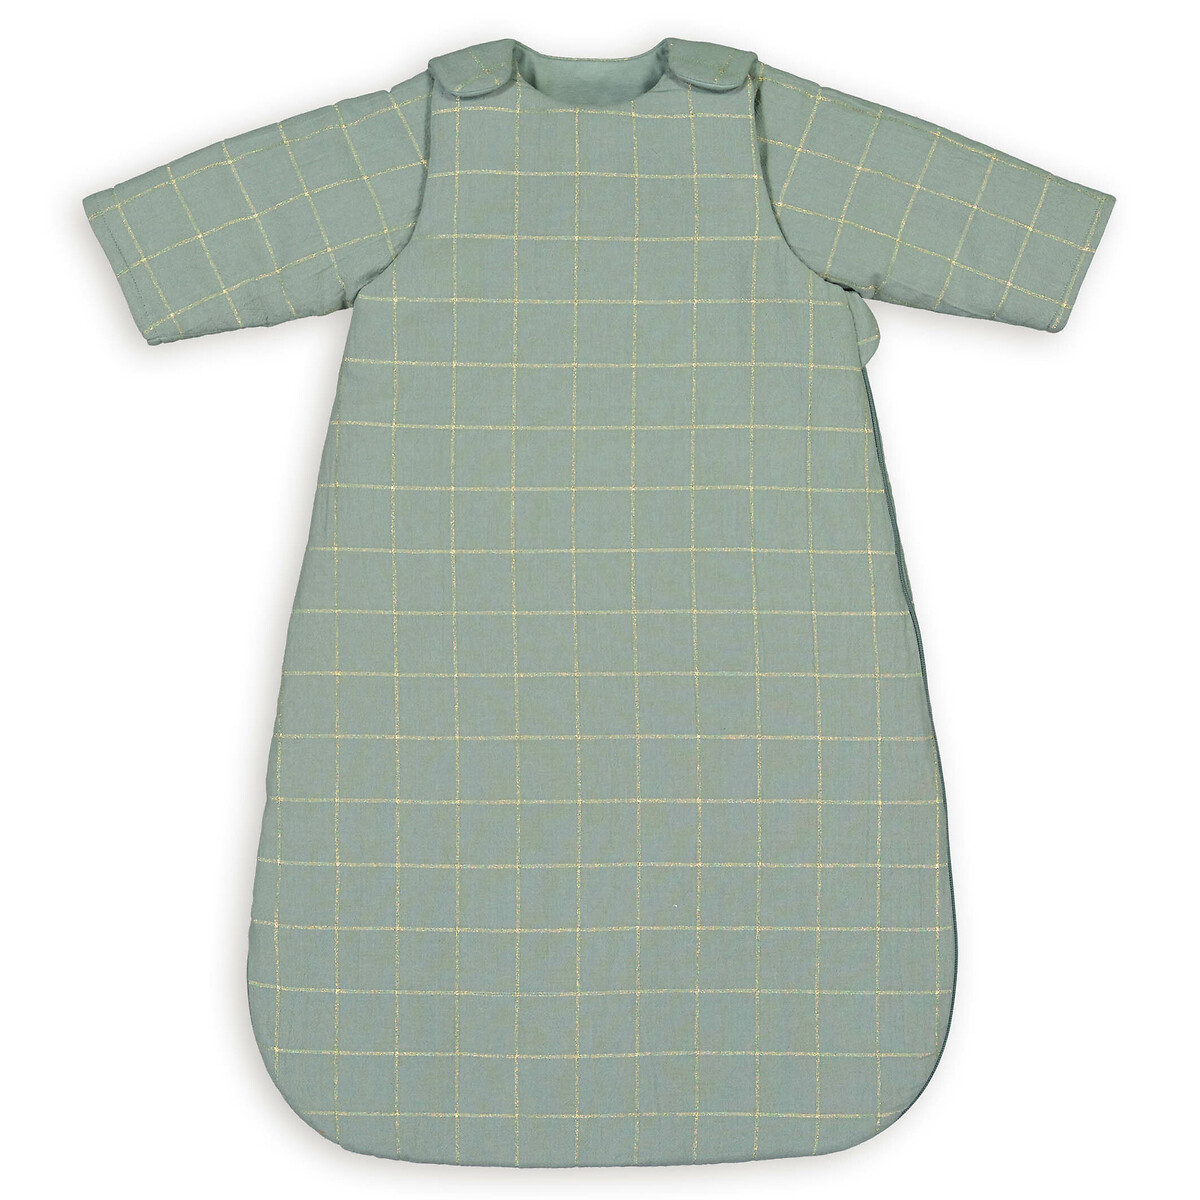 Конверт Для новорожденных со съемными рукавами из хлопка 2 года - 86 см зеленый